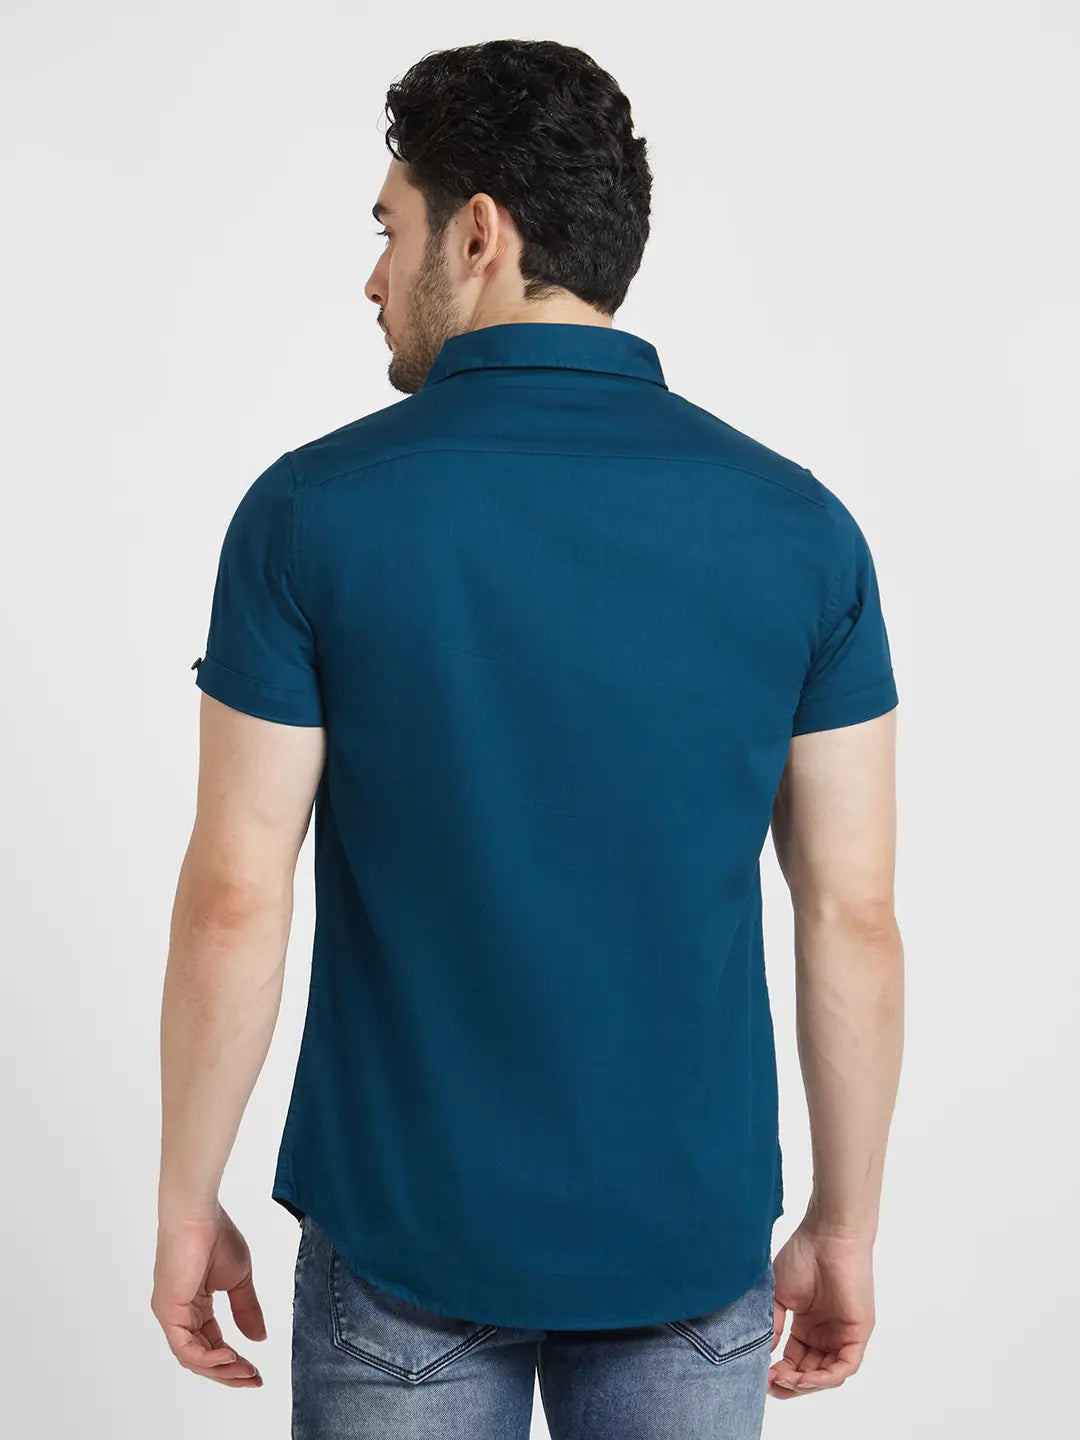 Spykar Men Teal Blue Dyed Regular Slim Fit Half Sleeve Plain Shirt